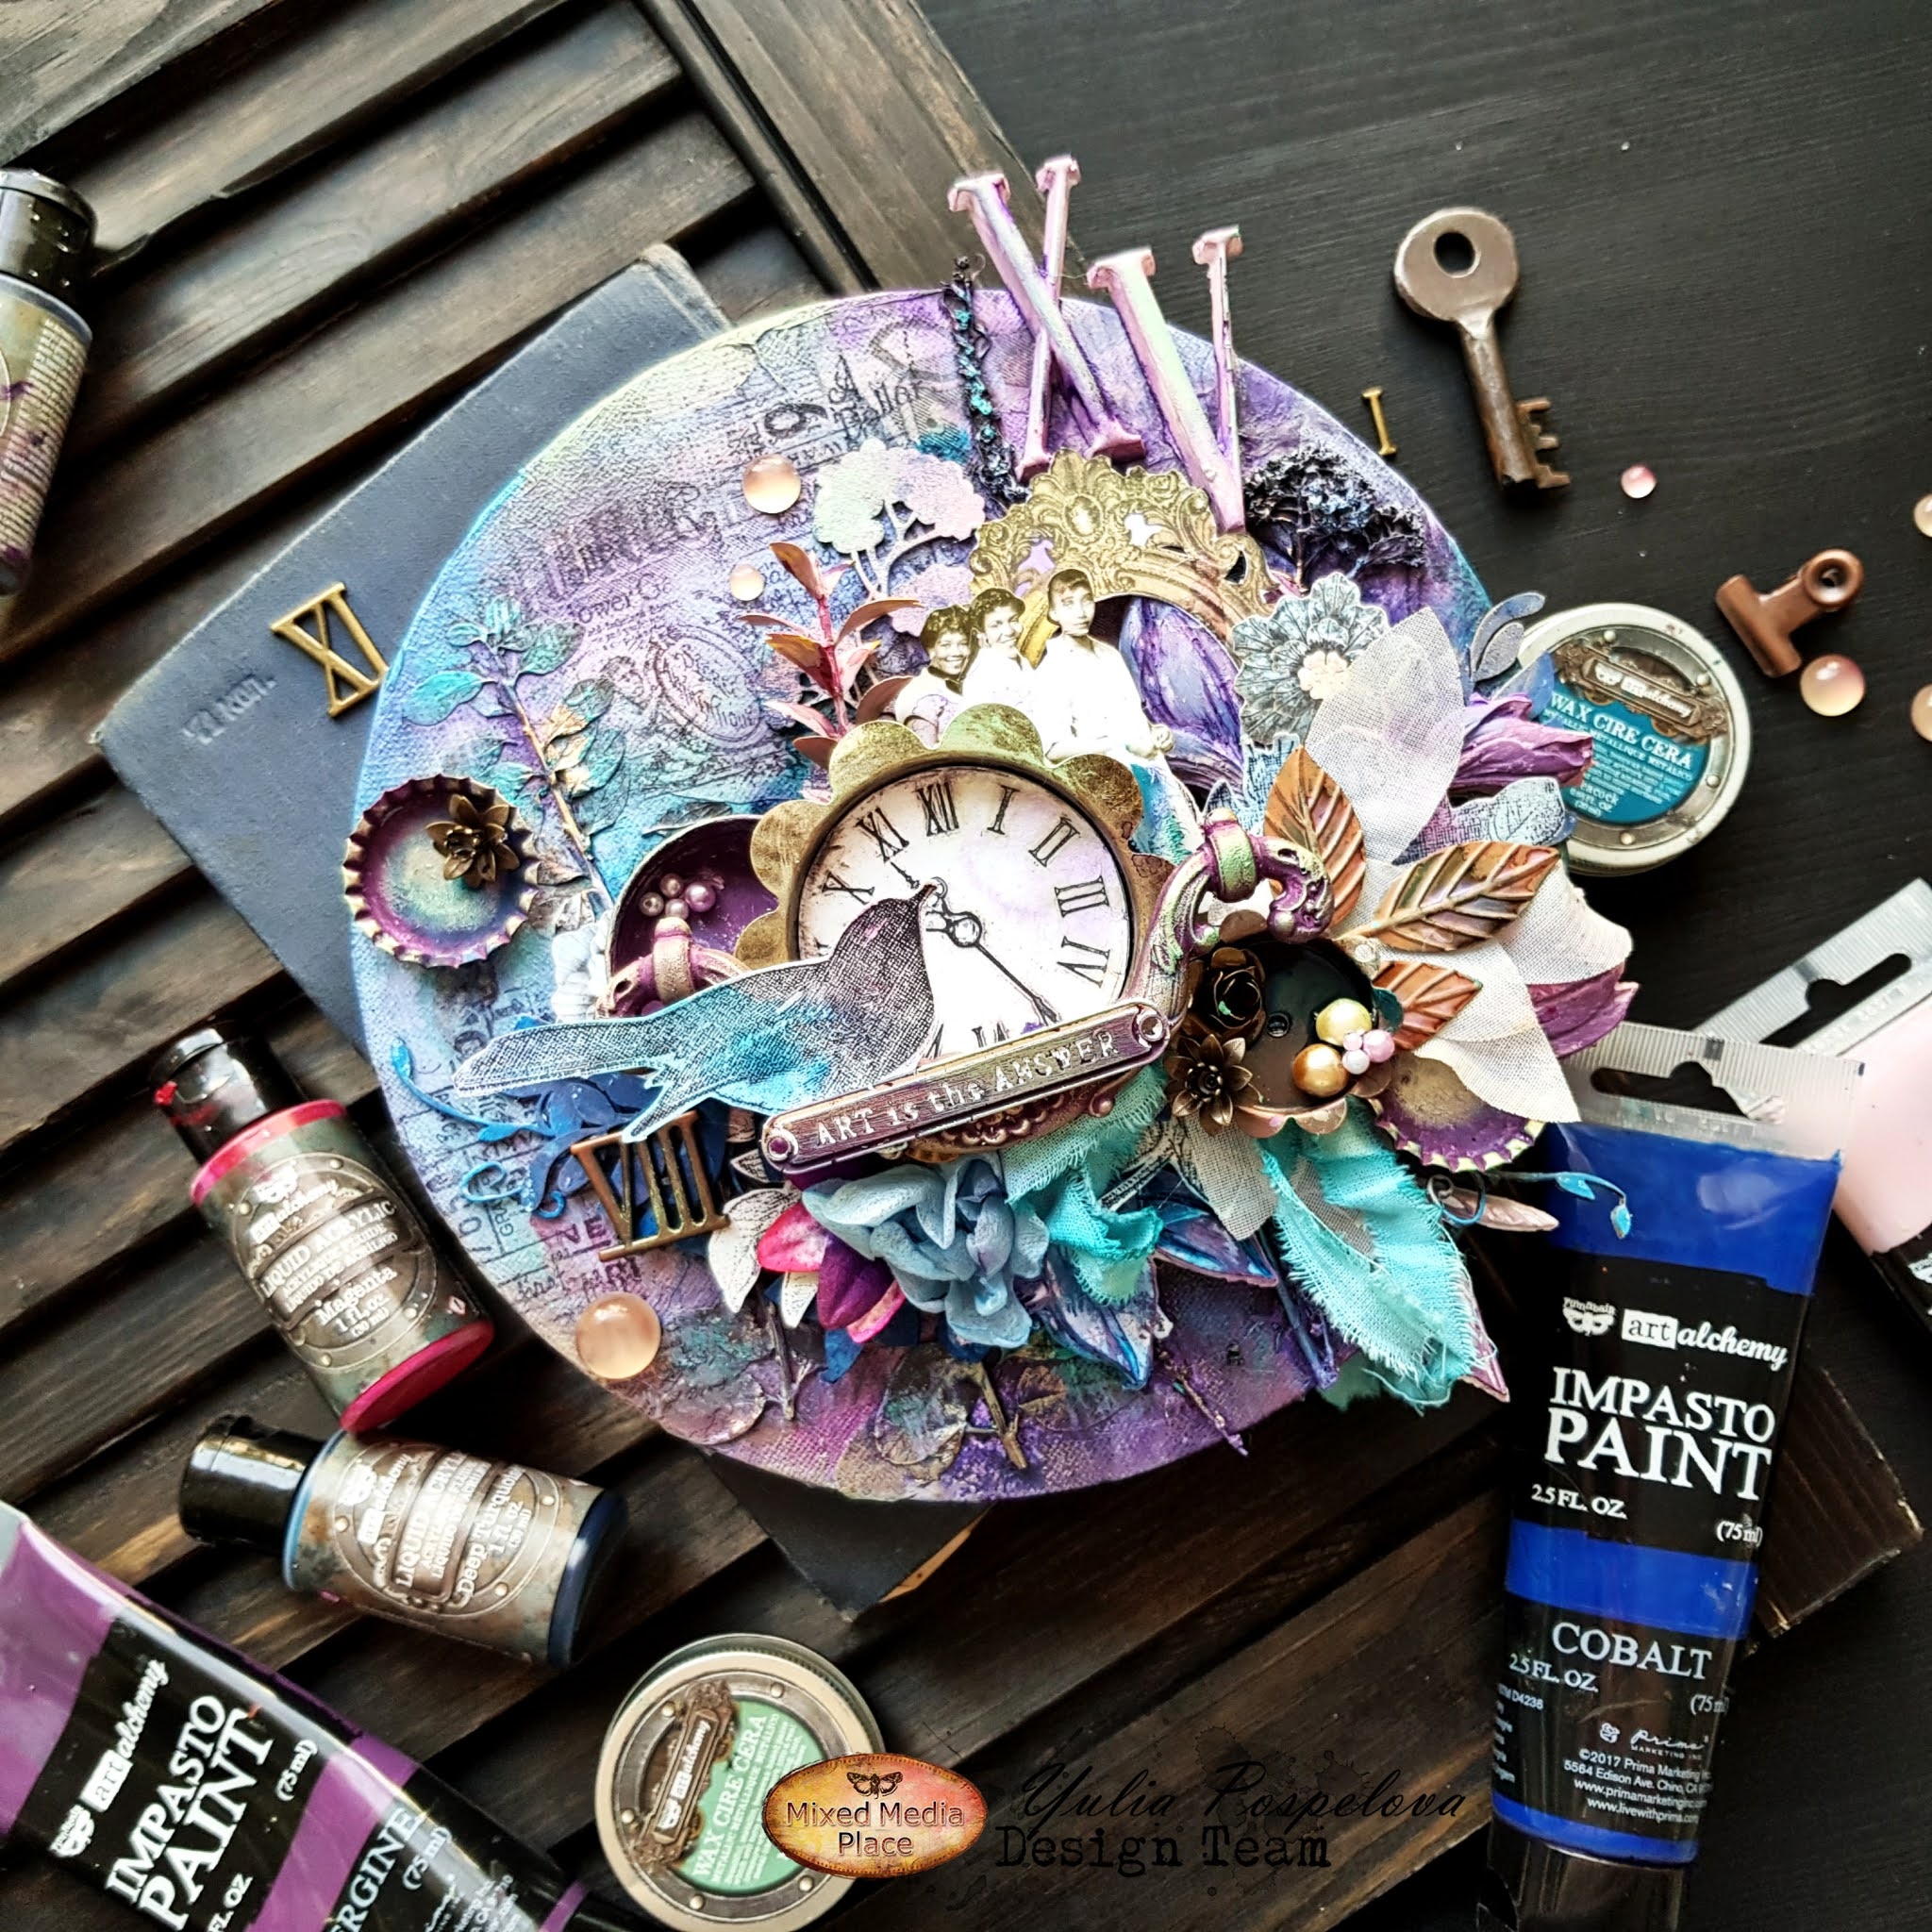 Finnabair Art Alchemy Liquid Acrylic Paint 1 Fluid Ounce Violet